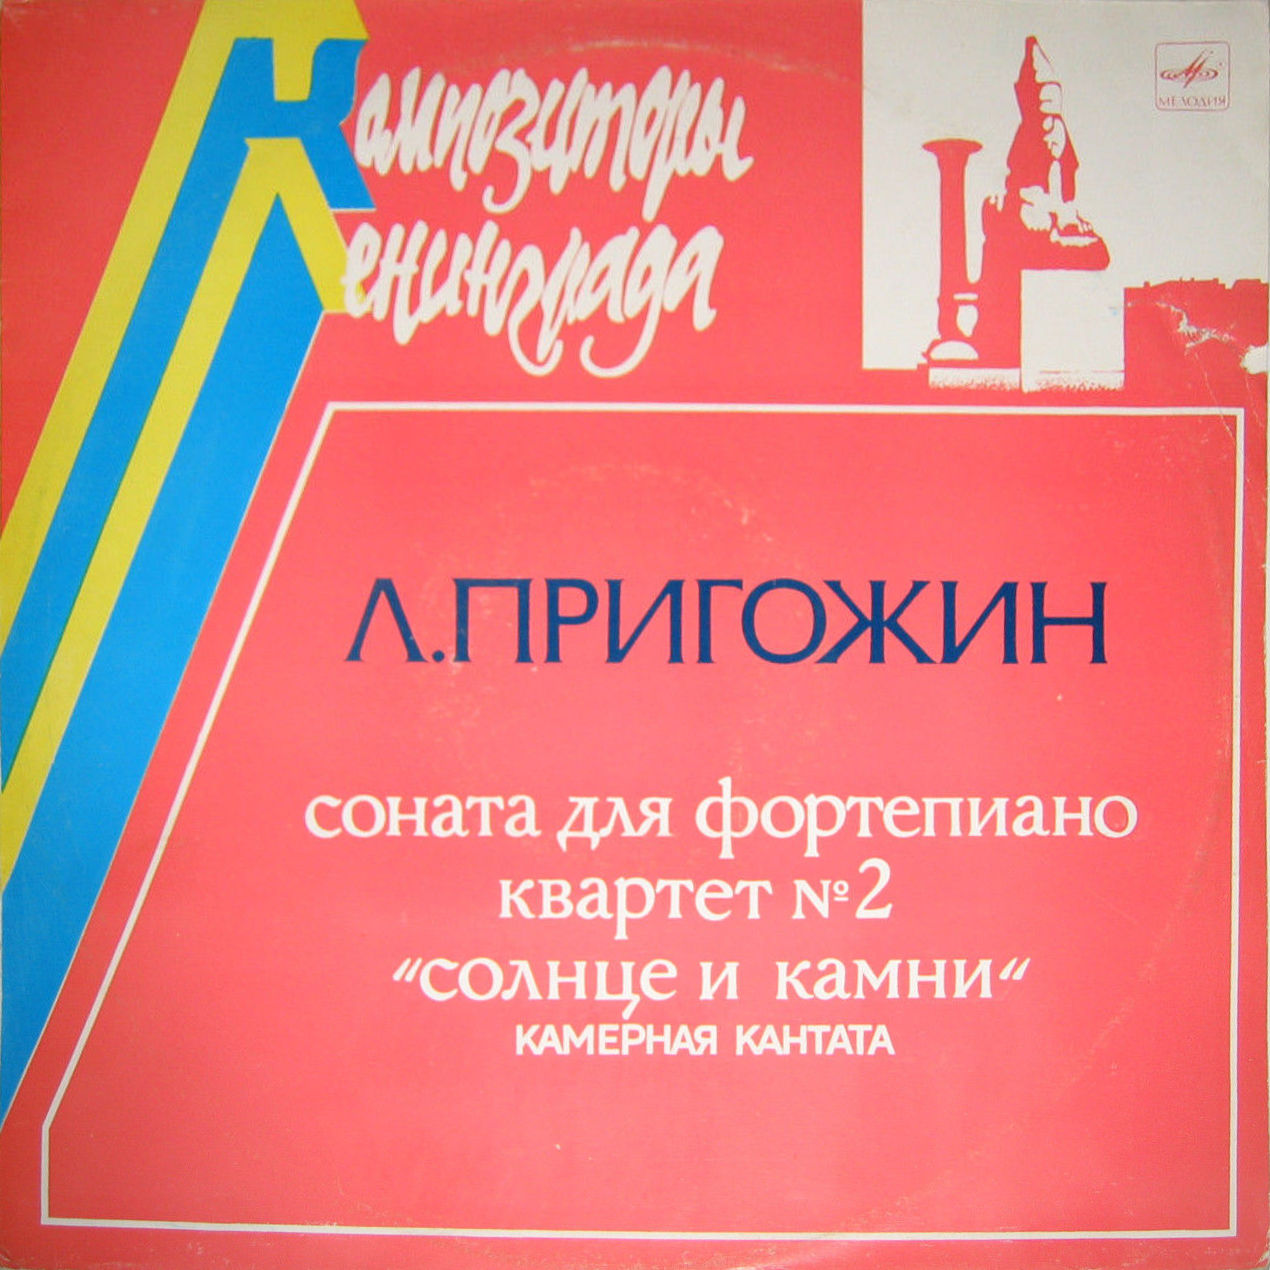 Л. ПРИГОЖИН (1926)